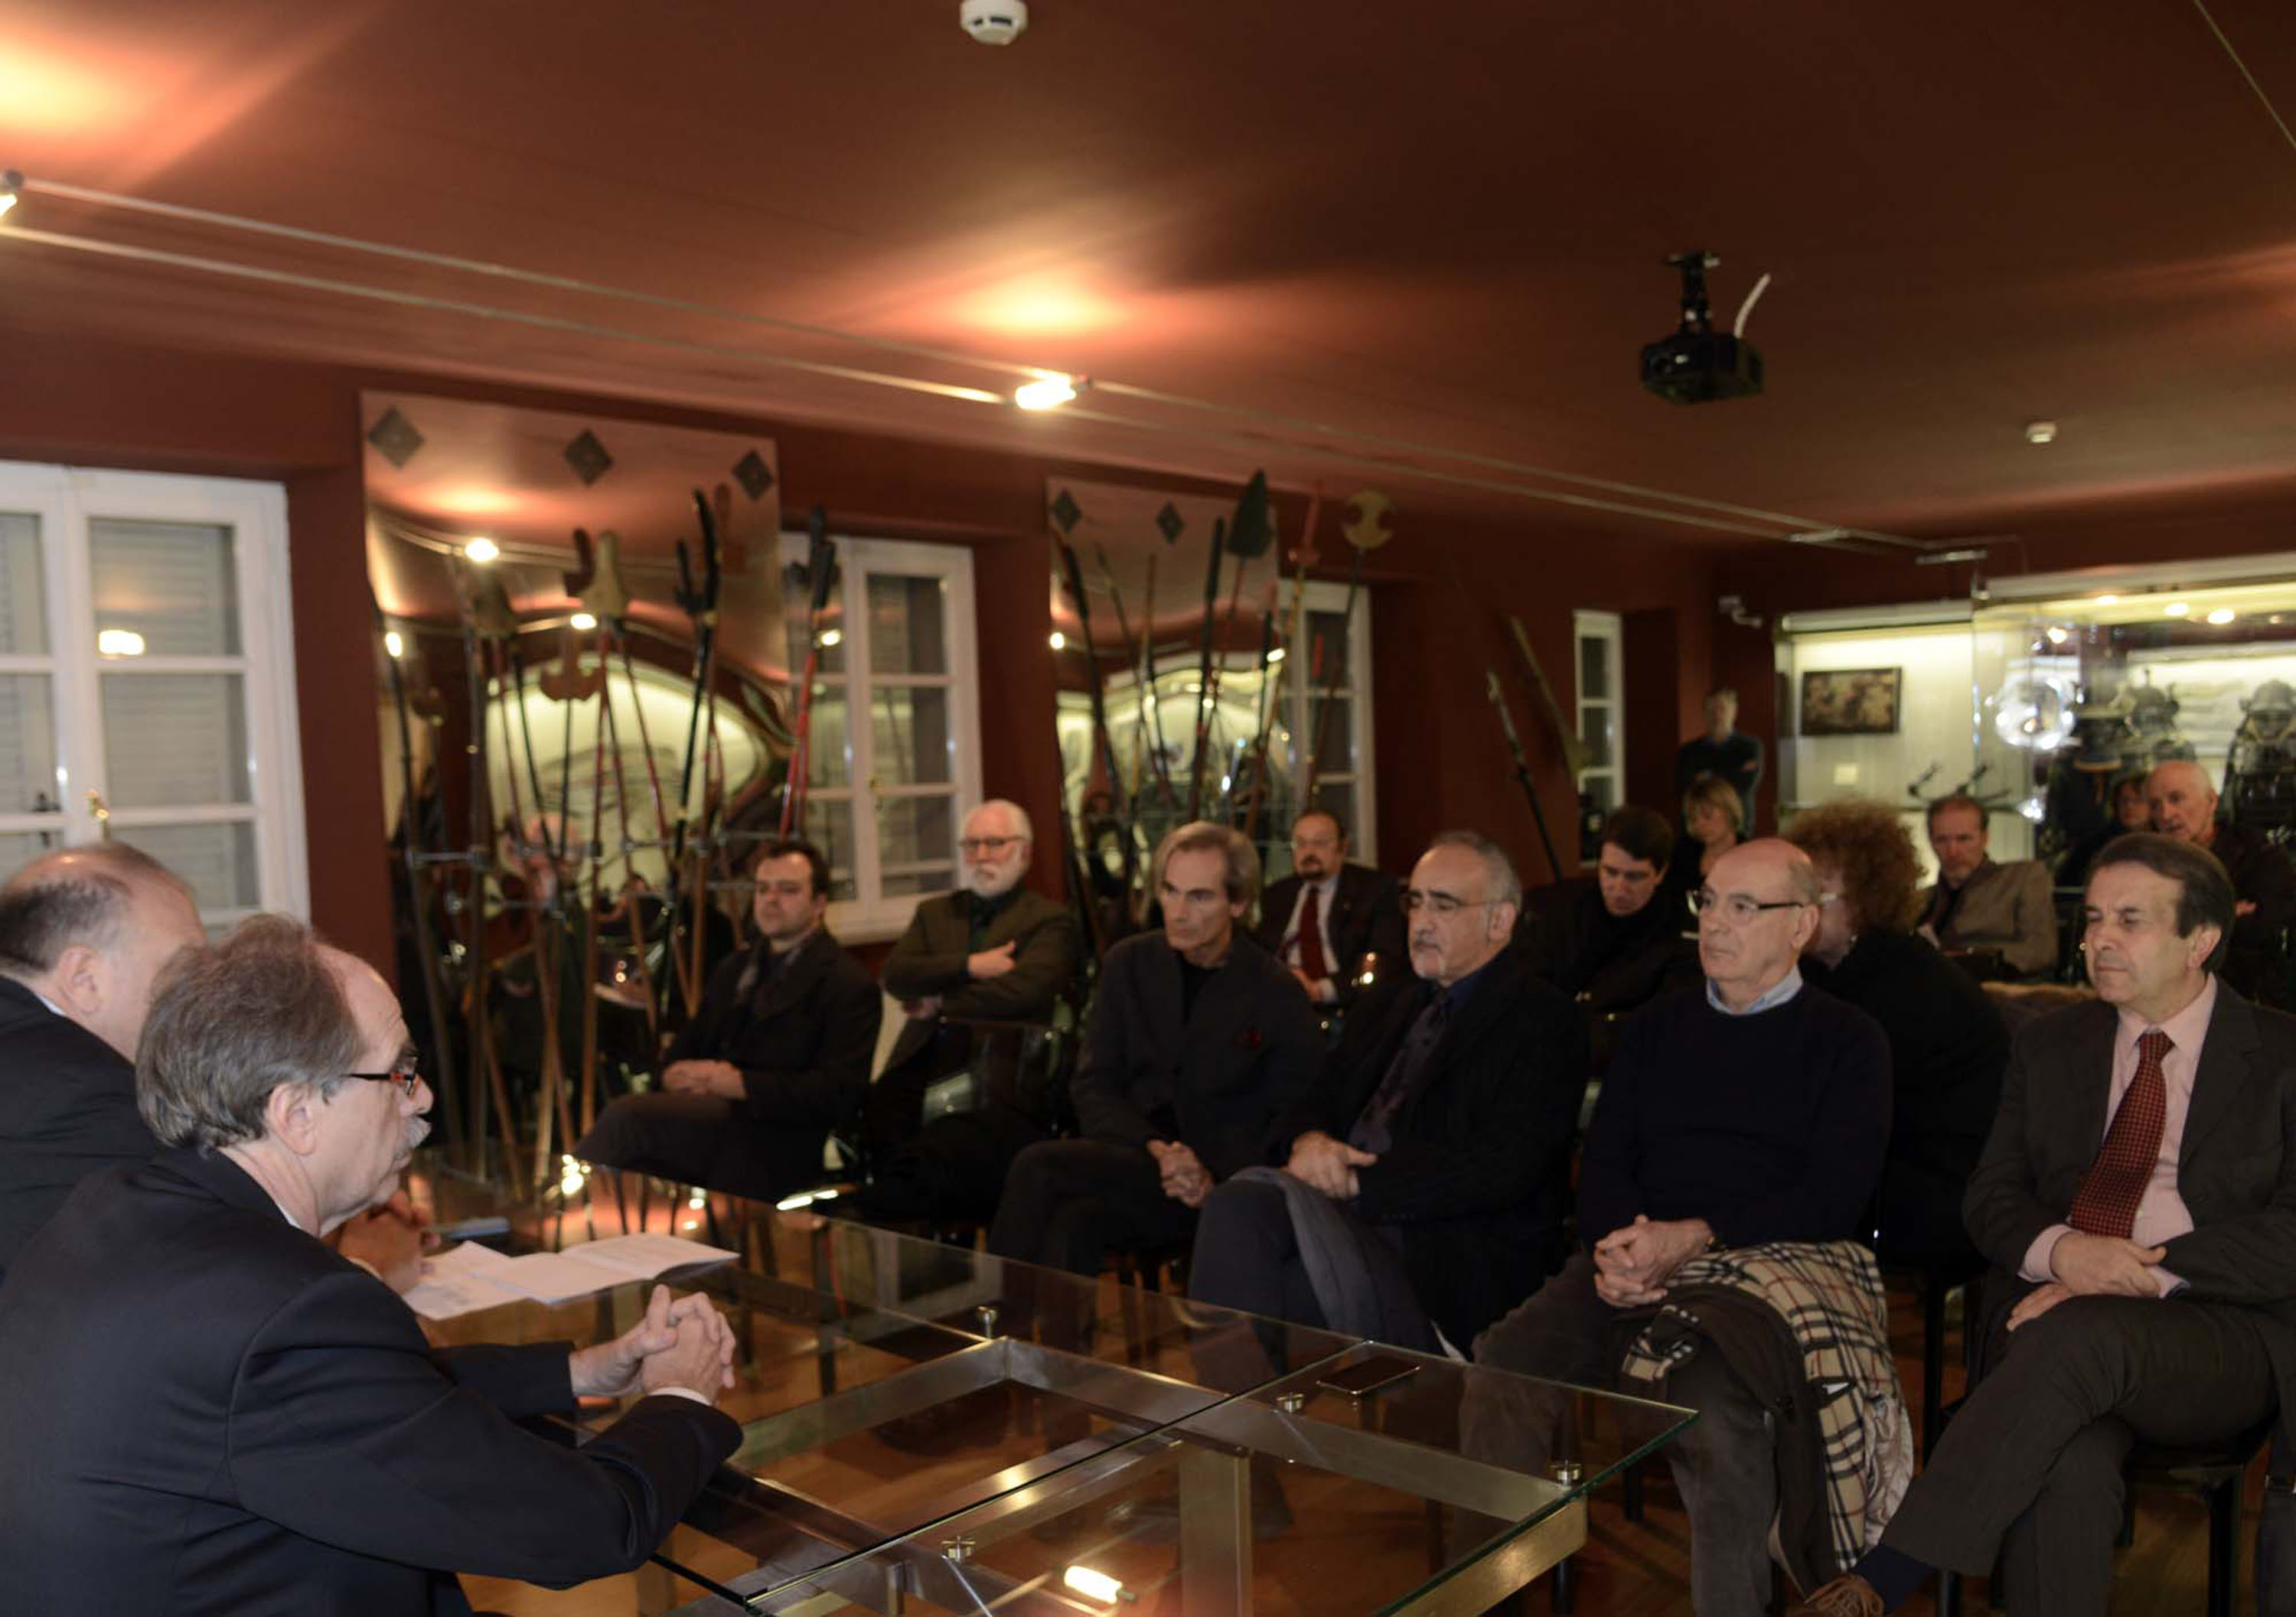 Conferenza stampa sugli interventi della Regione FVG a favore del Teatro lirico Giuseppe Verdi, con Gianni Torrenti (Assessore regionale Cultura) e Roberto Cosolini (Sindaco Trieste) - Trieste 14/12/2013